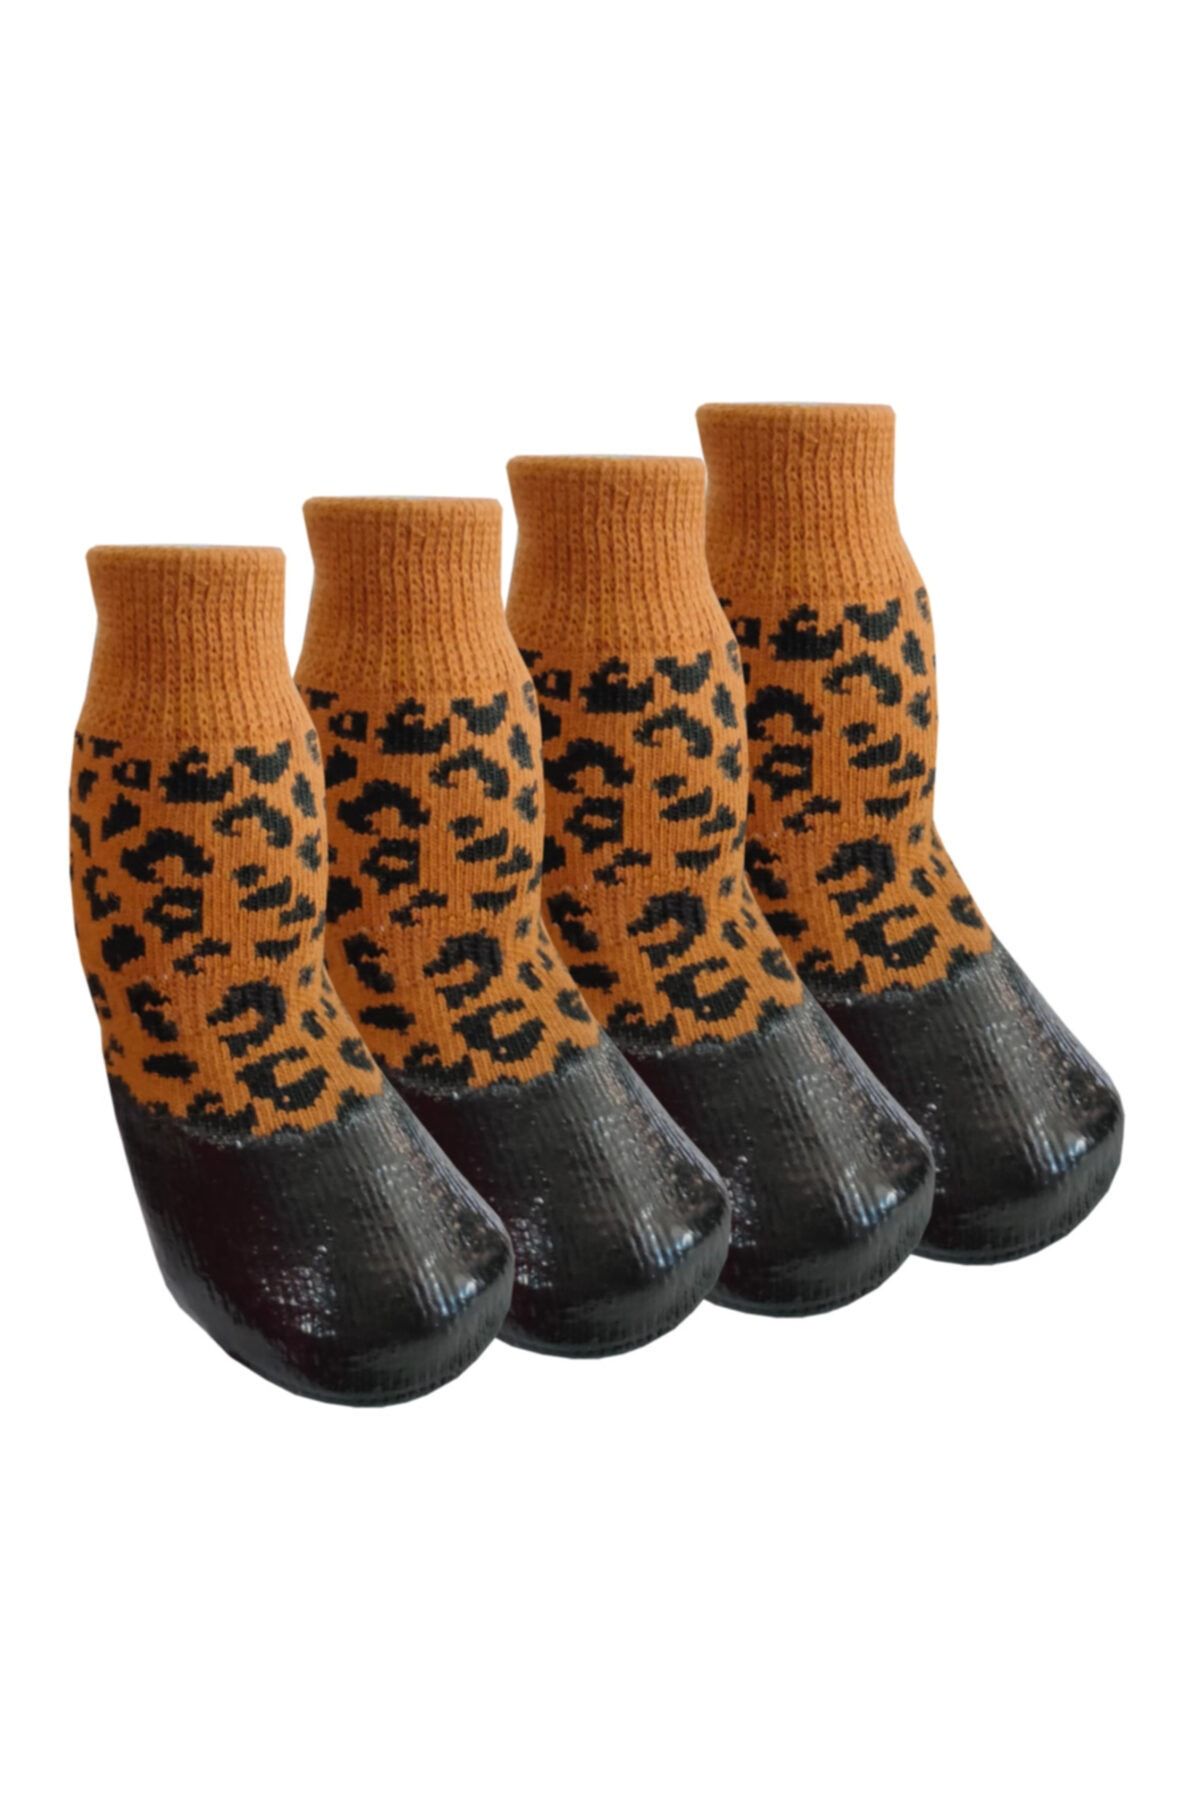 Trixie Kedi Köpek Ayakkabı Çorap Nitril Kaplı Örme Kışlık Çorap Leopar Desen Br20